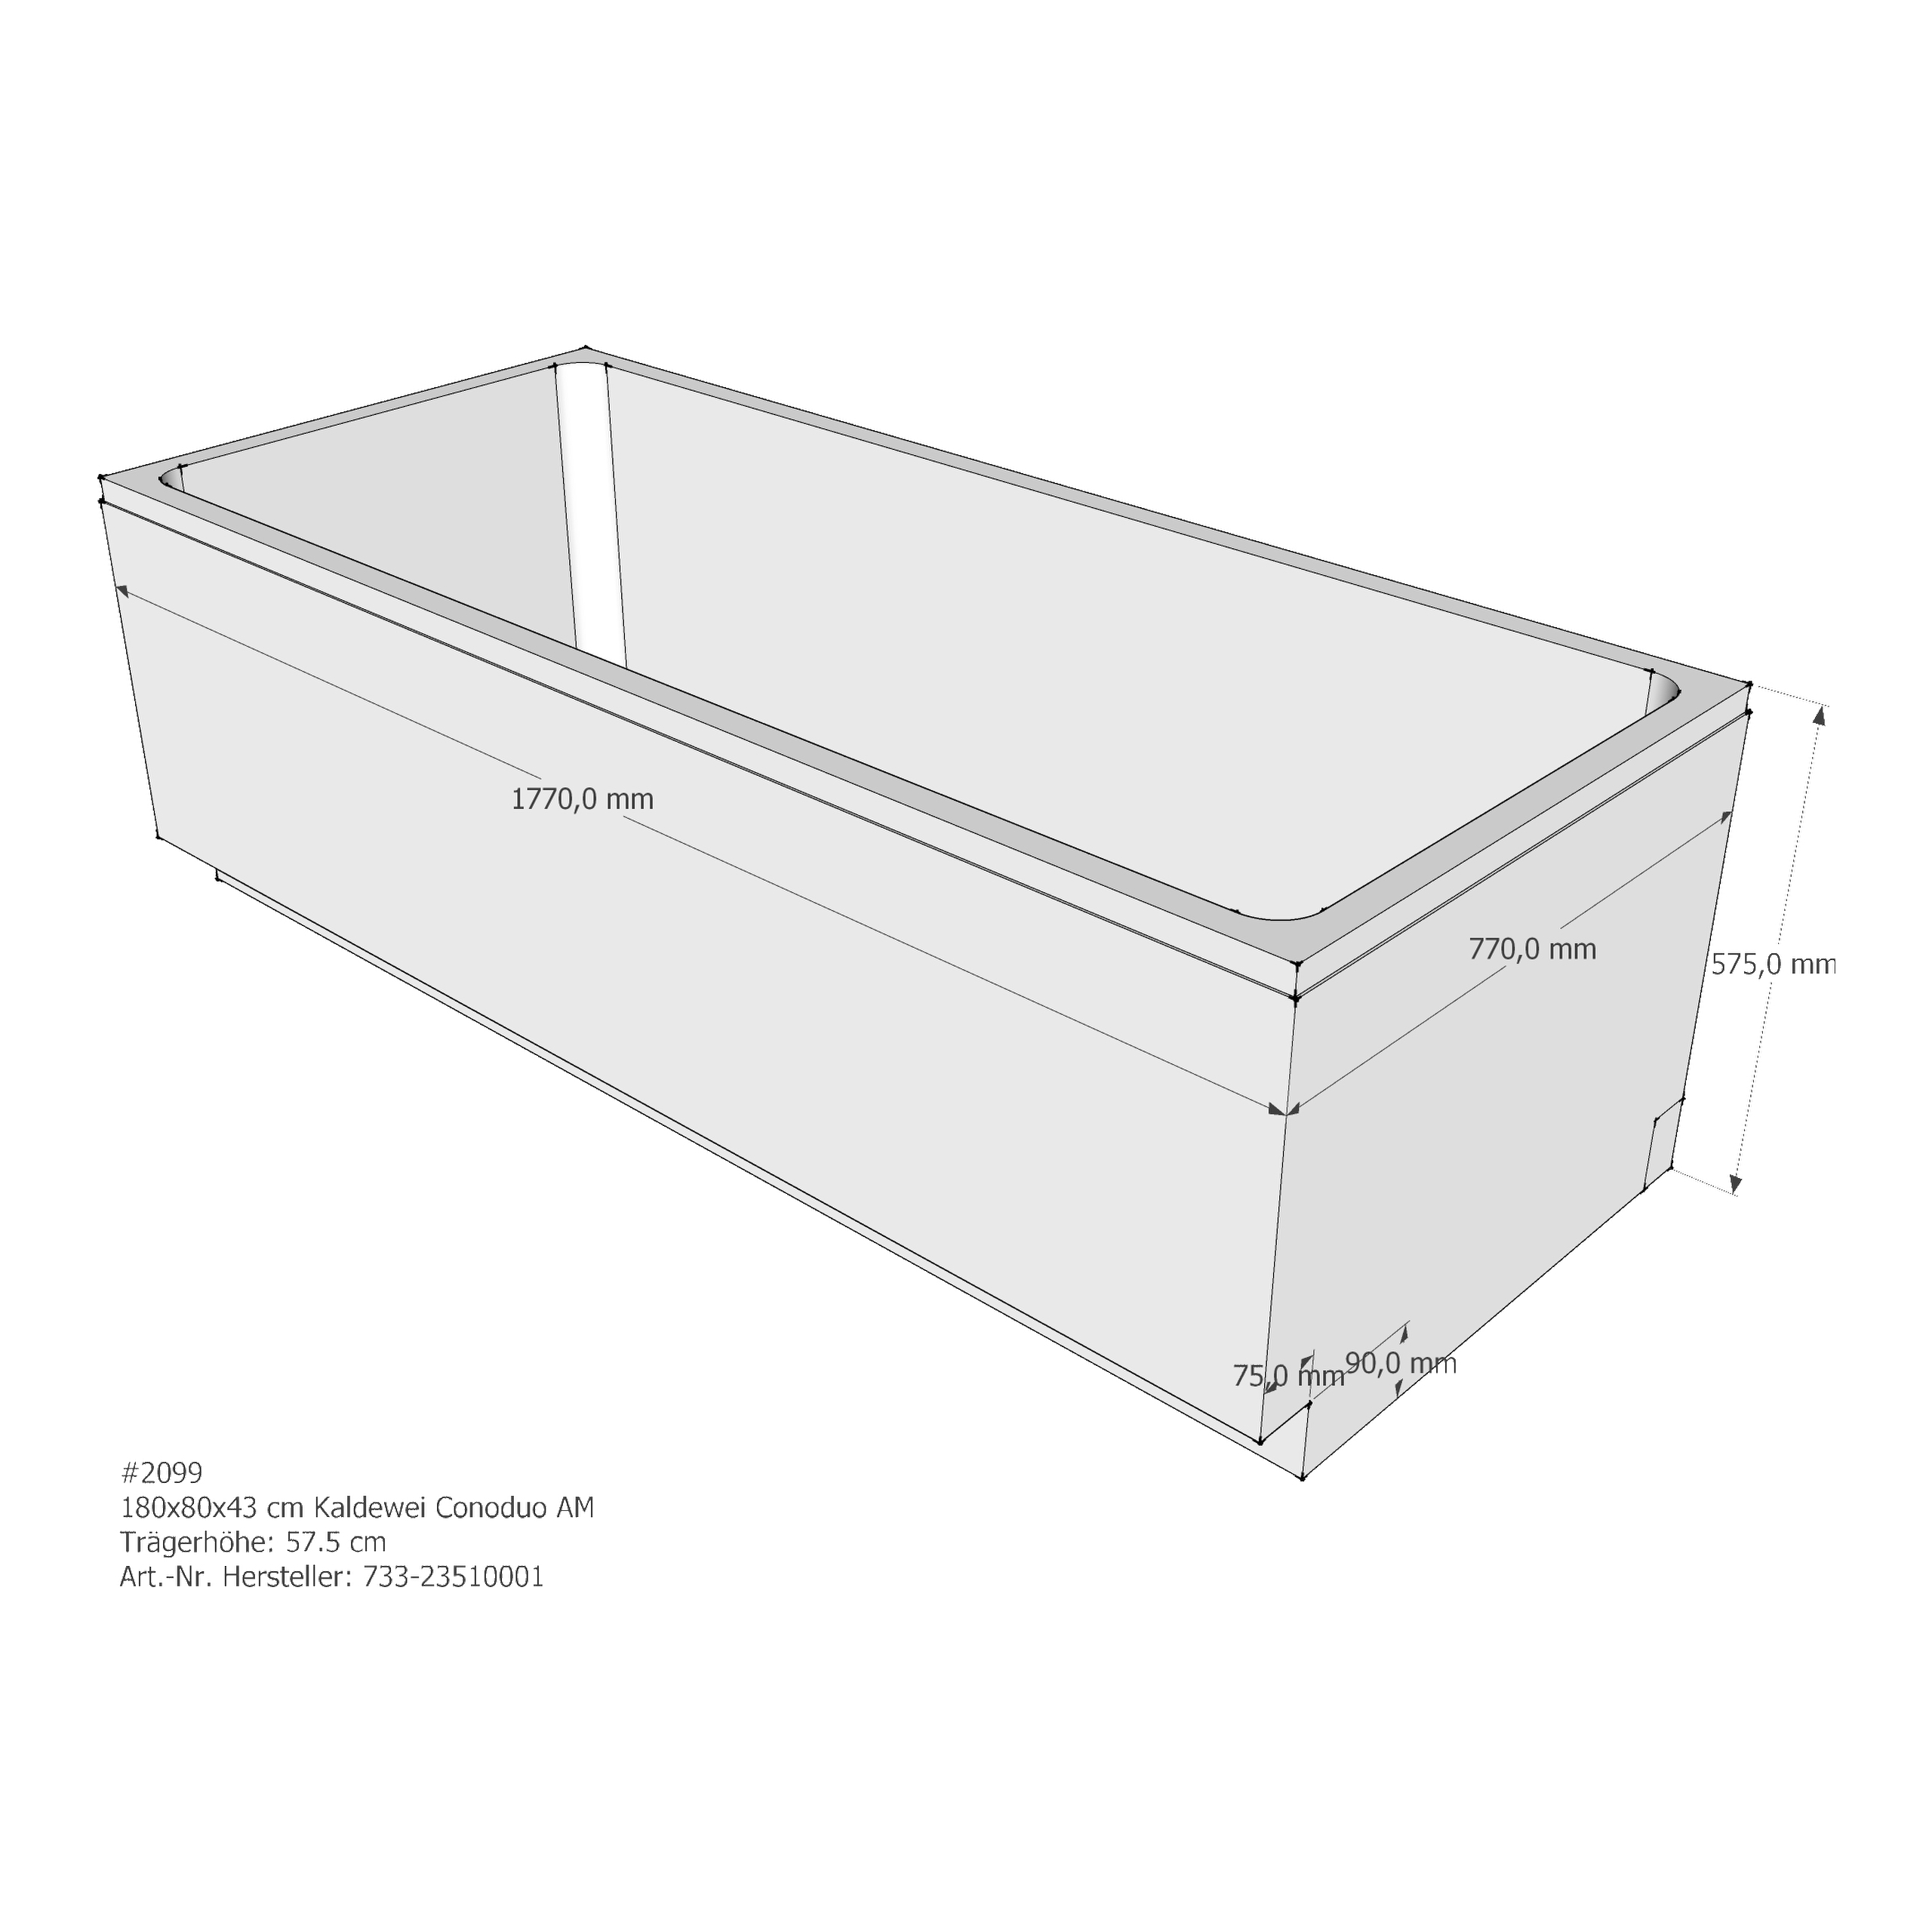 Badewannenträger für Kaldewei Conoduo 180 × 80 × 43 cm